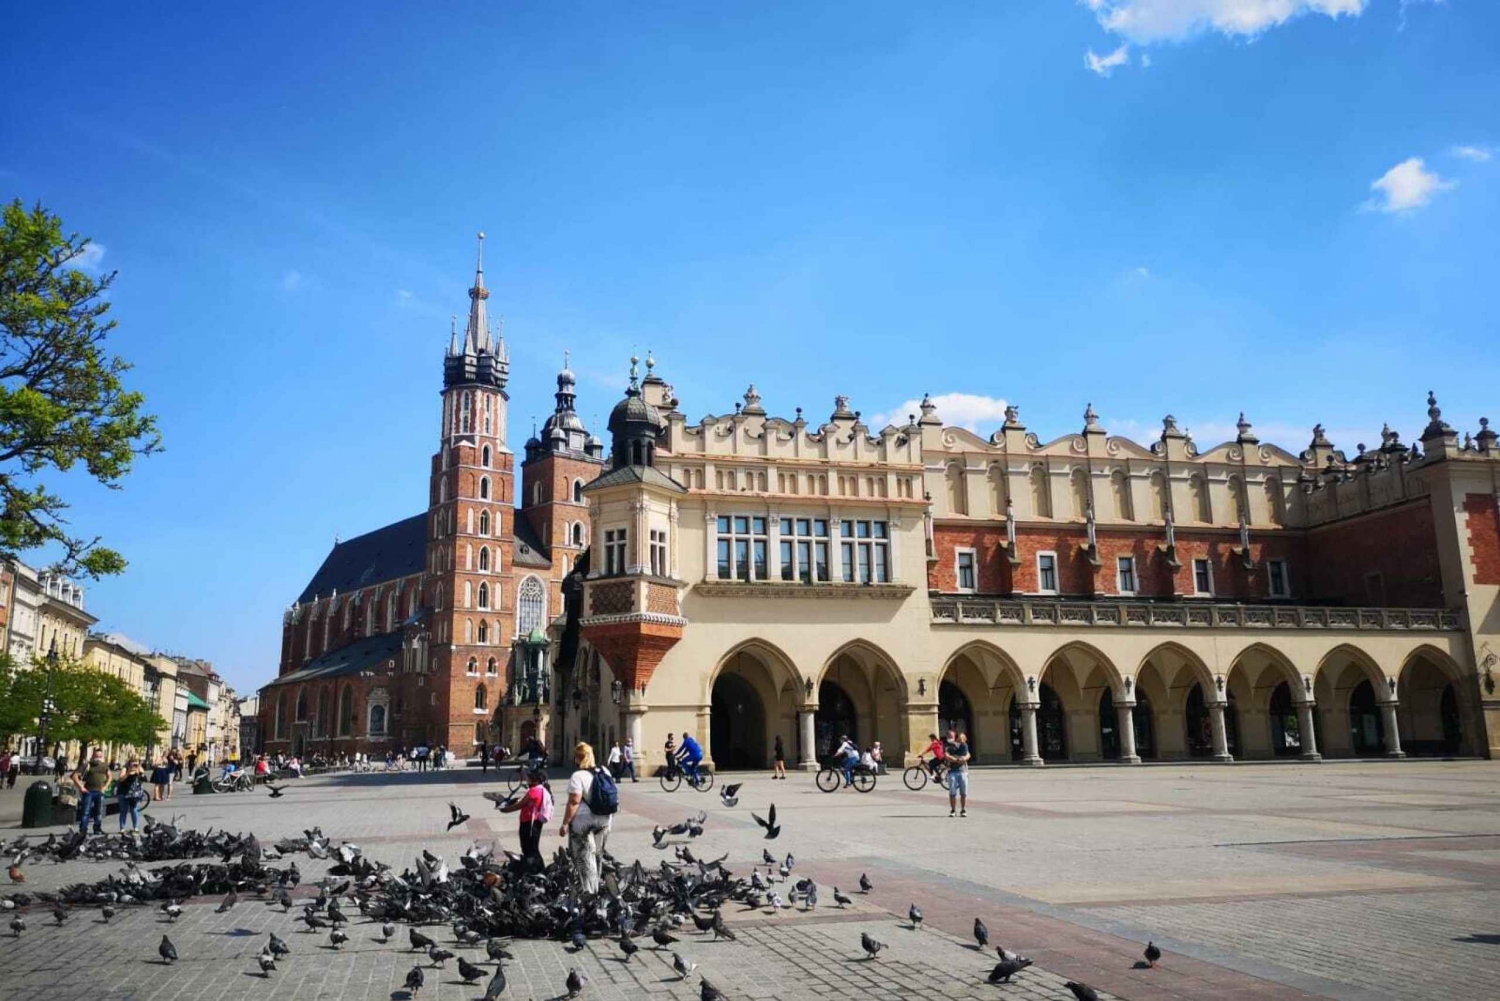 Warszawa: Krakow & Wieliczka Salt Mine Tour